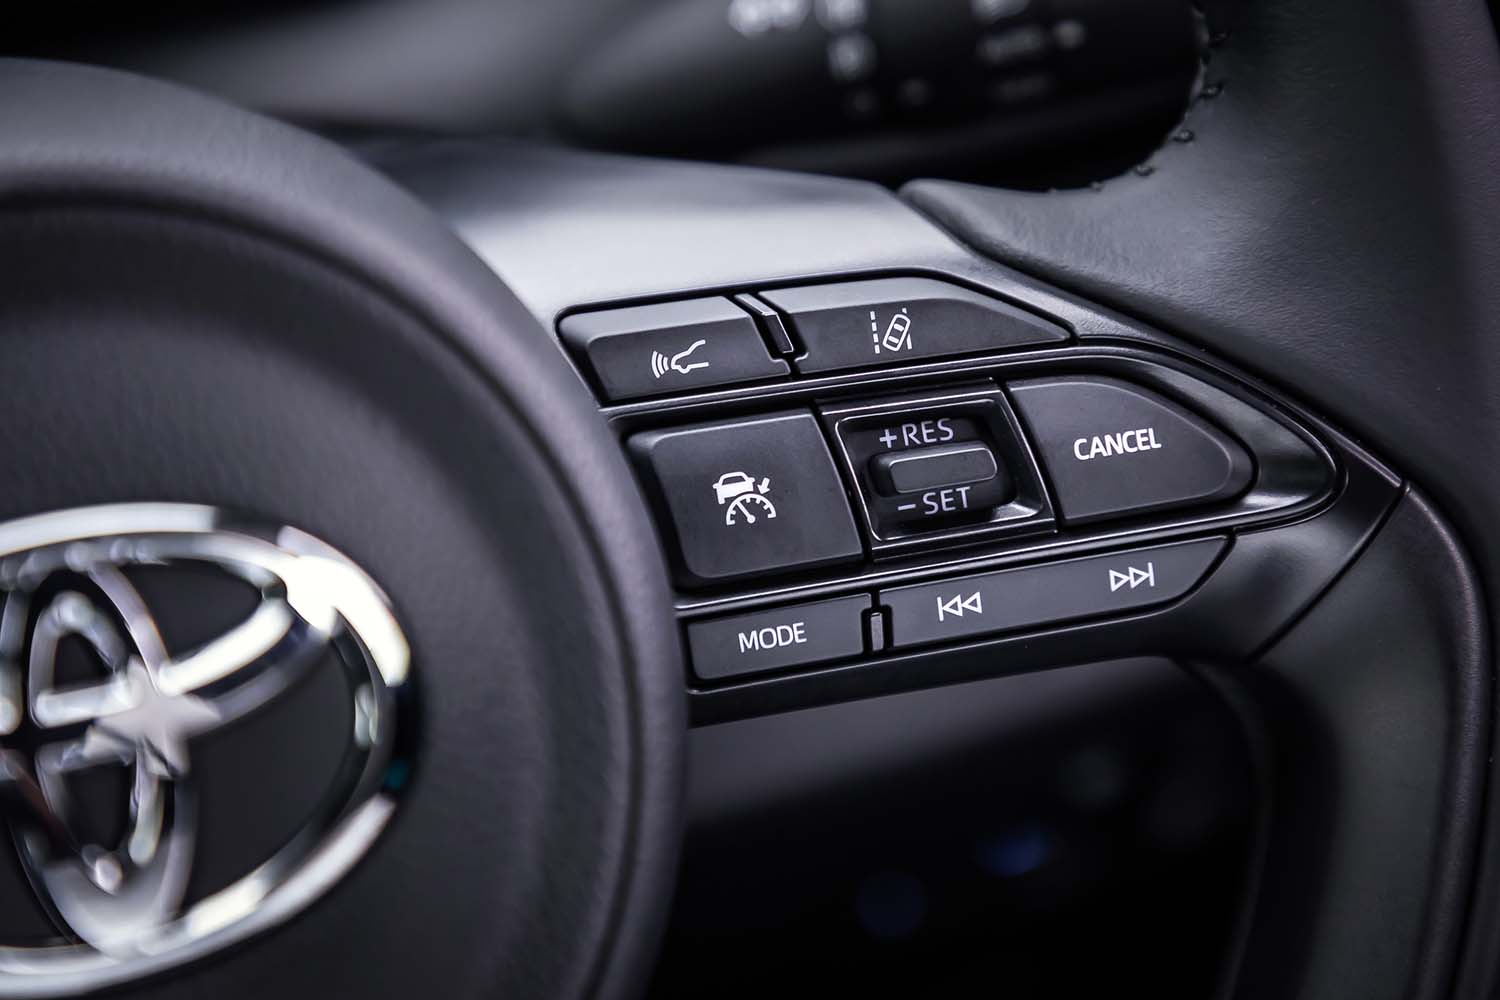 先進運転支援システム「Toyota Safety Sense」は全車に標準装備される。写真はその操作スイッチ。